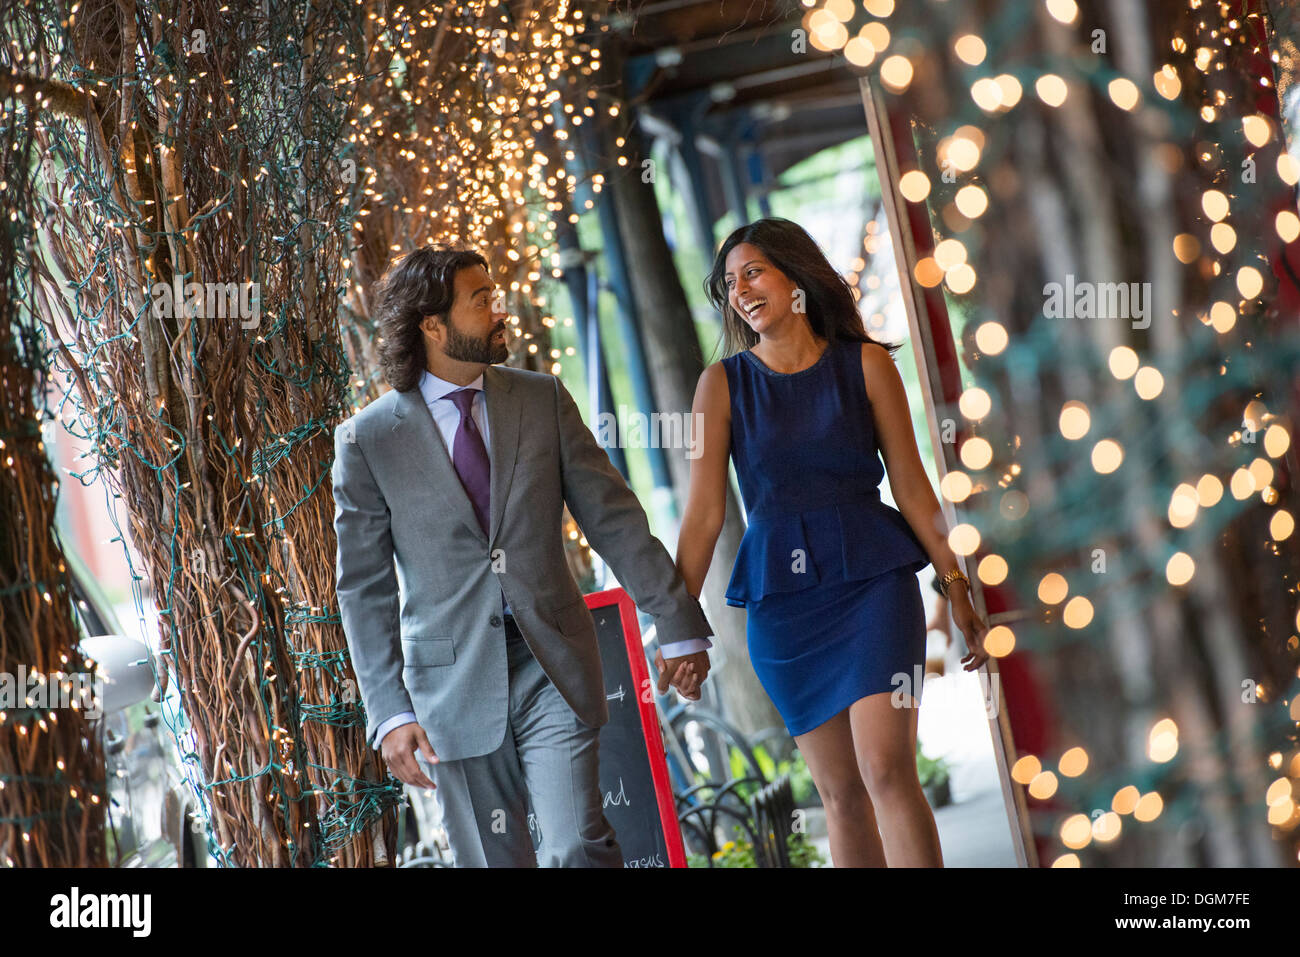 Business-Leute. Zwei Menschen, Mann und Frau Hand in Hand und Fuß unter einer Pergola mit Lichterketten beleuchtet. Stockfoto